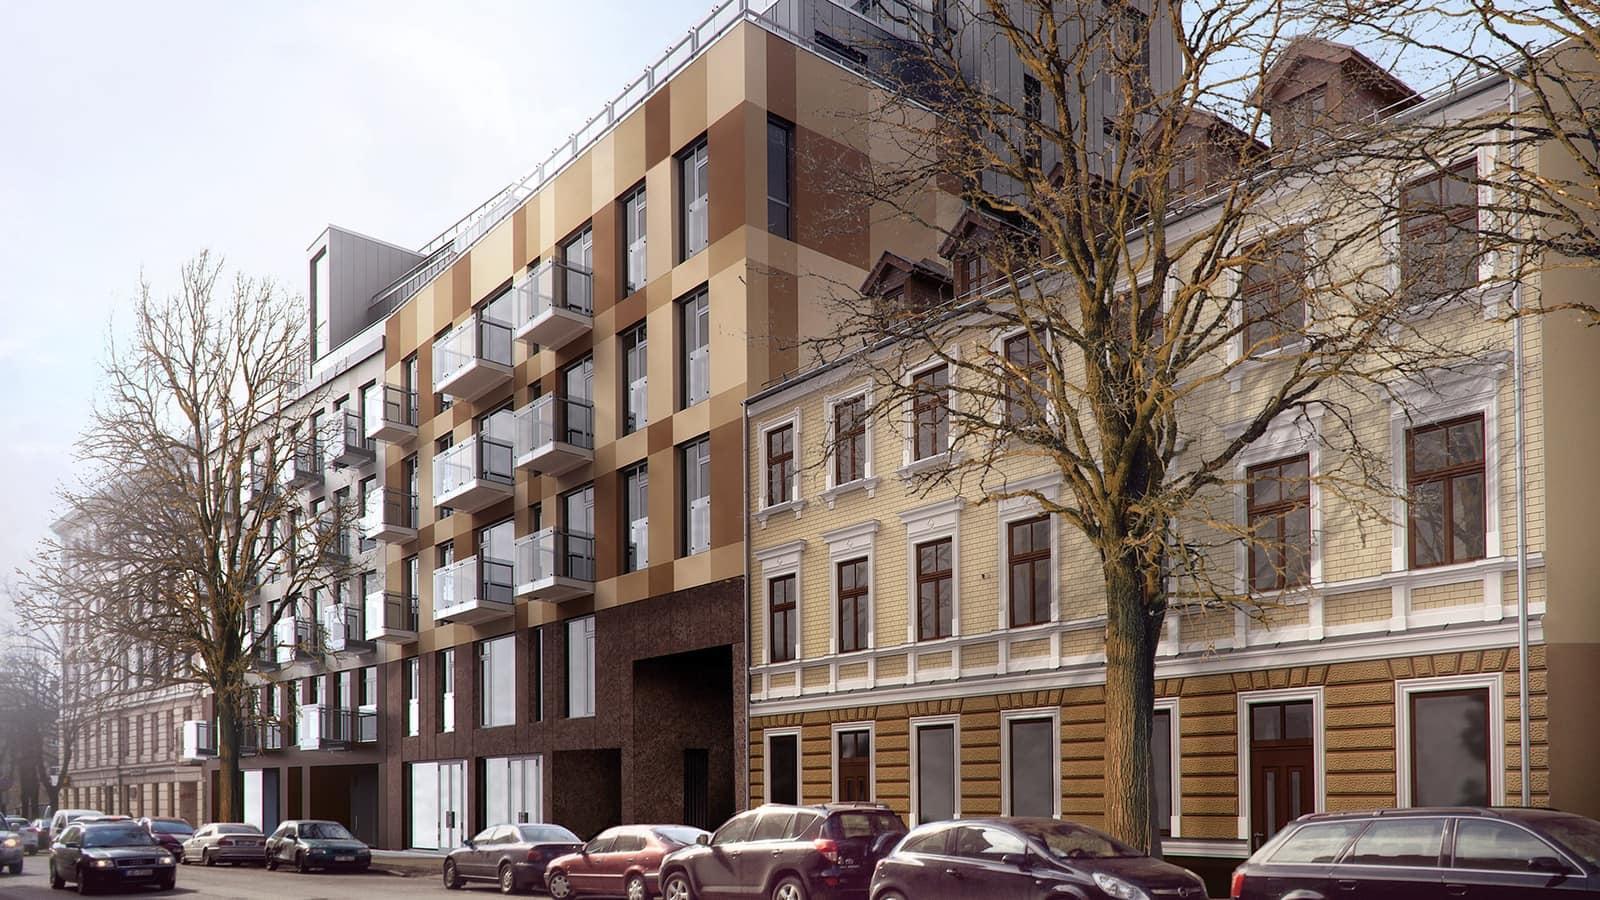 Karstākais jaunums Rīgas īpašumu tirgū – īres dzīvokļi jaunā projektā Cēsu Terraces. Nāc apskatīt! - Nekustamo īpašumu ziņas - City24.lv nekustamo īpašumu sludinājumu portāls